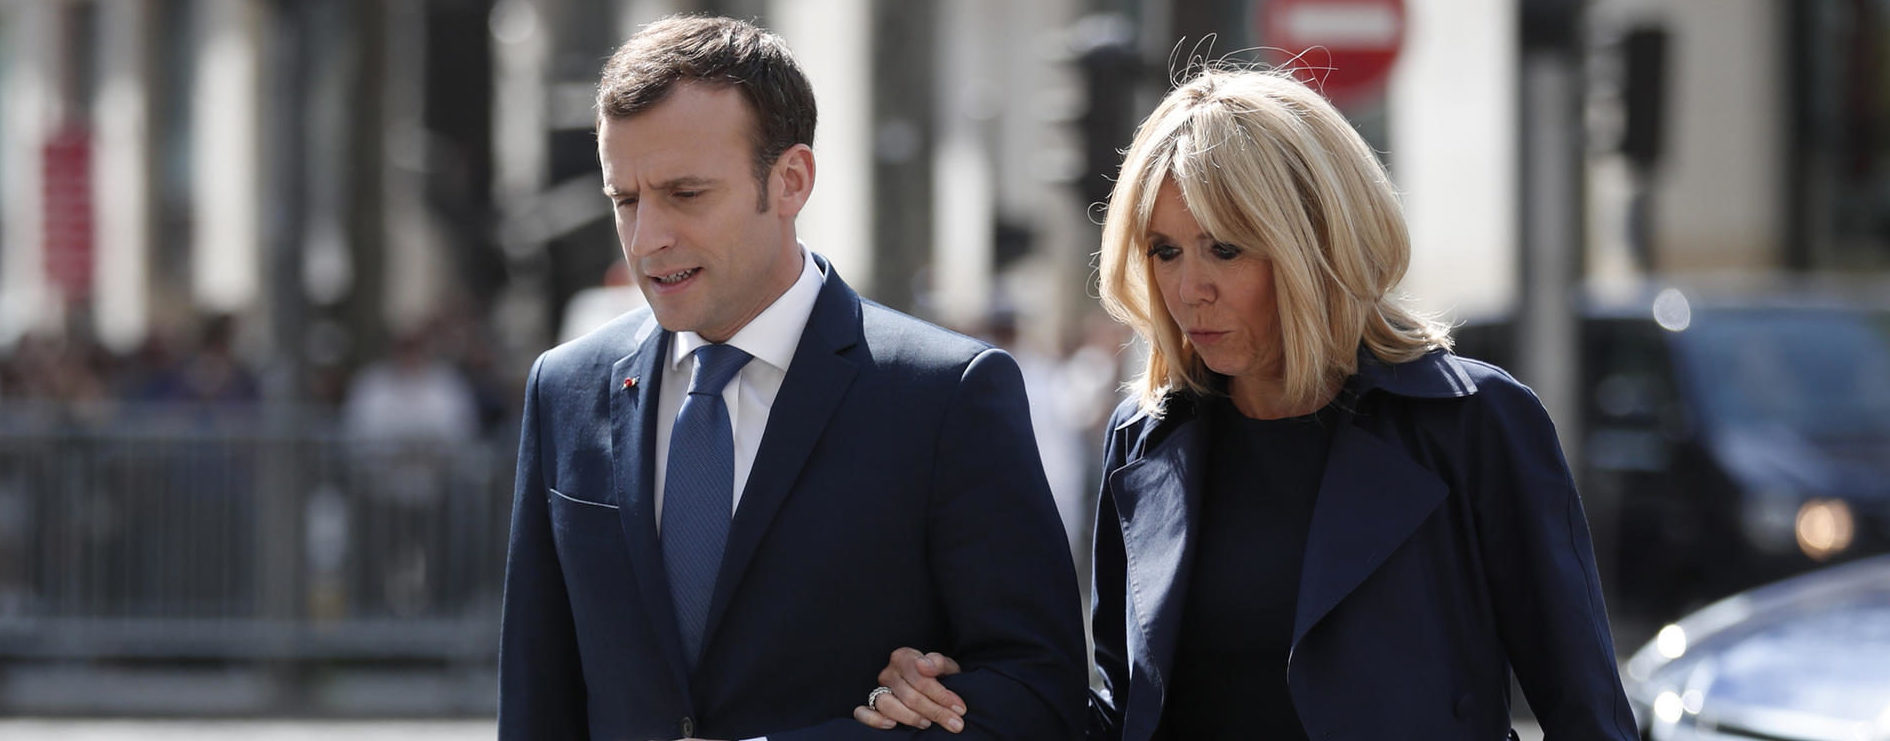 La drôle de confidence d'Emmanuel Macron sur son couple